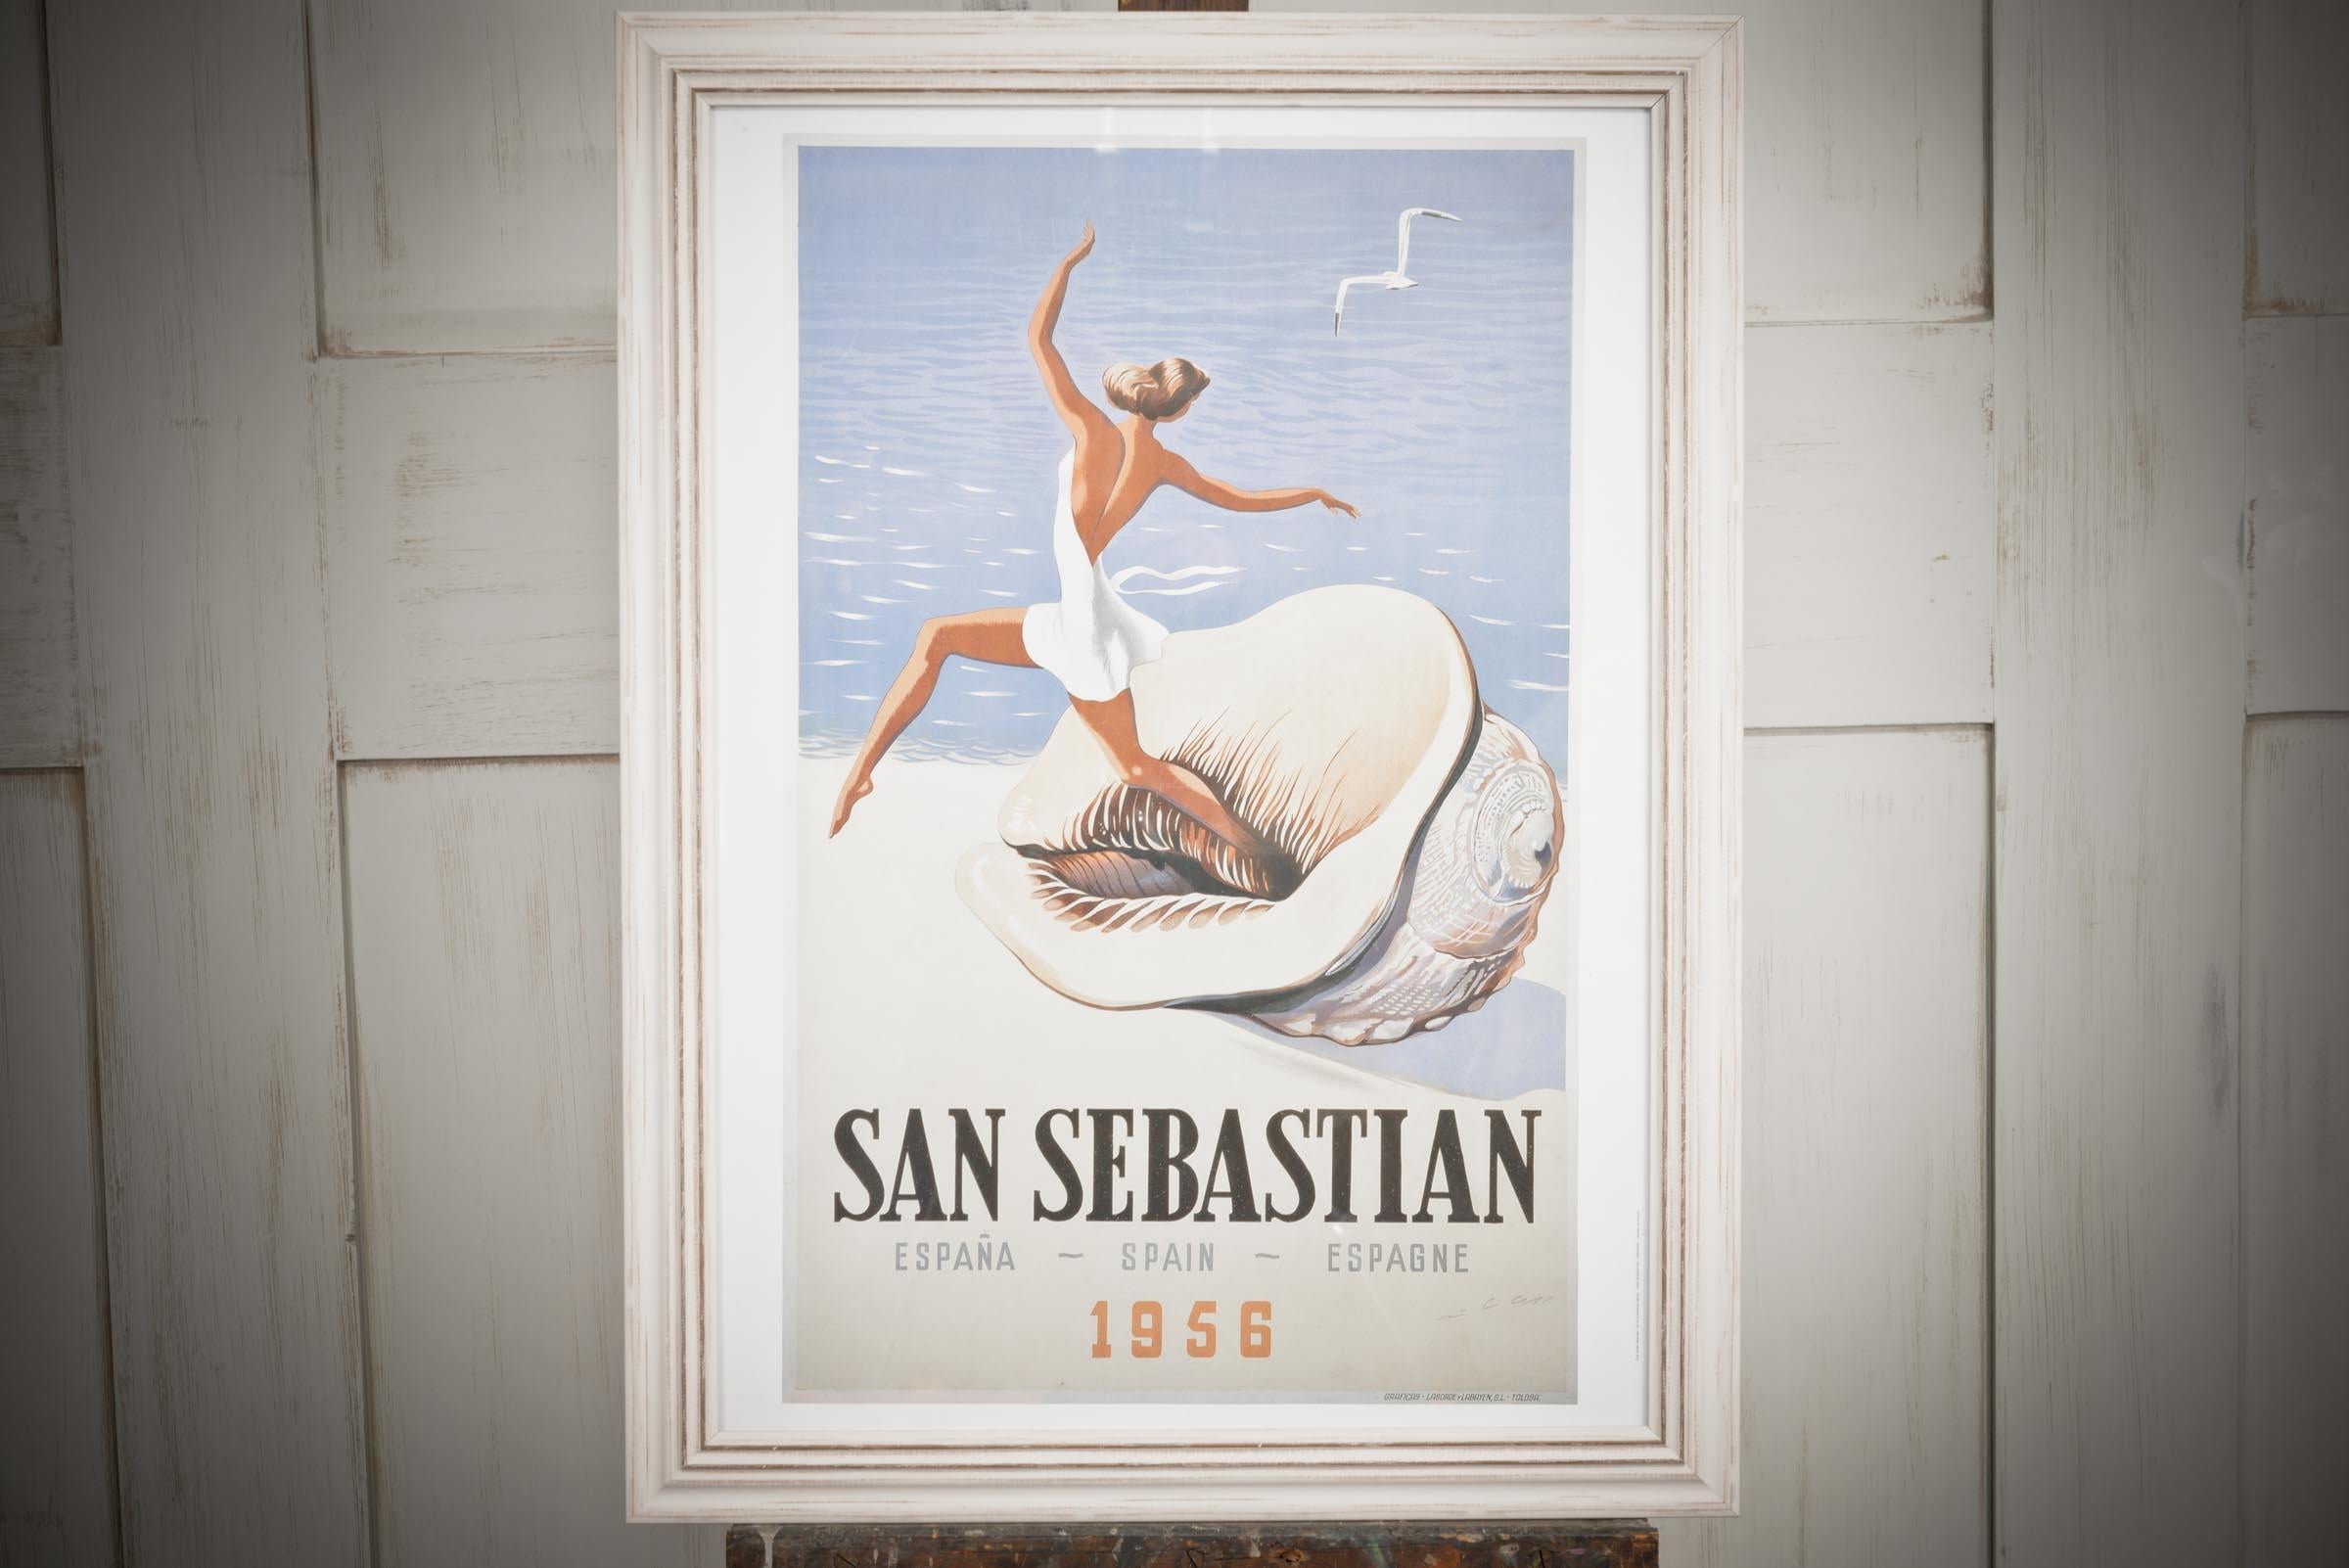 Spanish Framed San Sabastian Poster For Sale